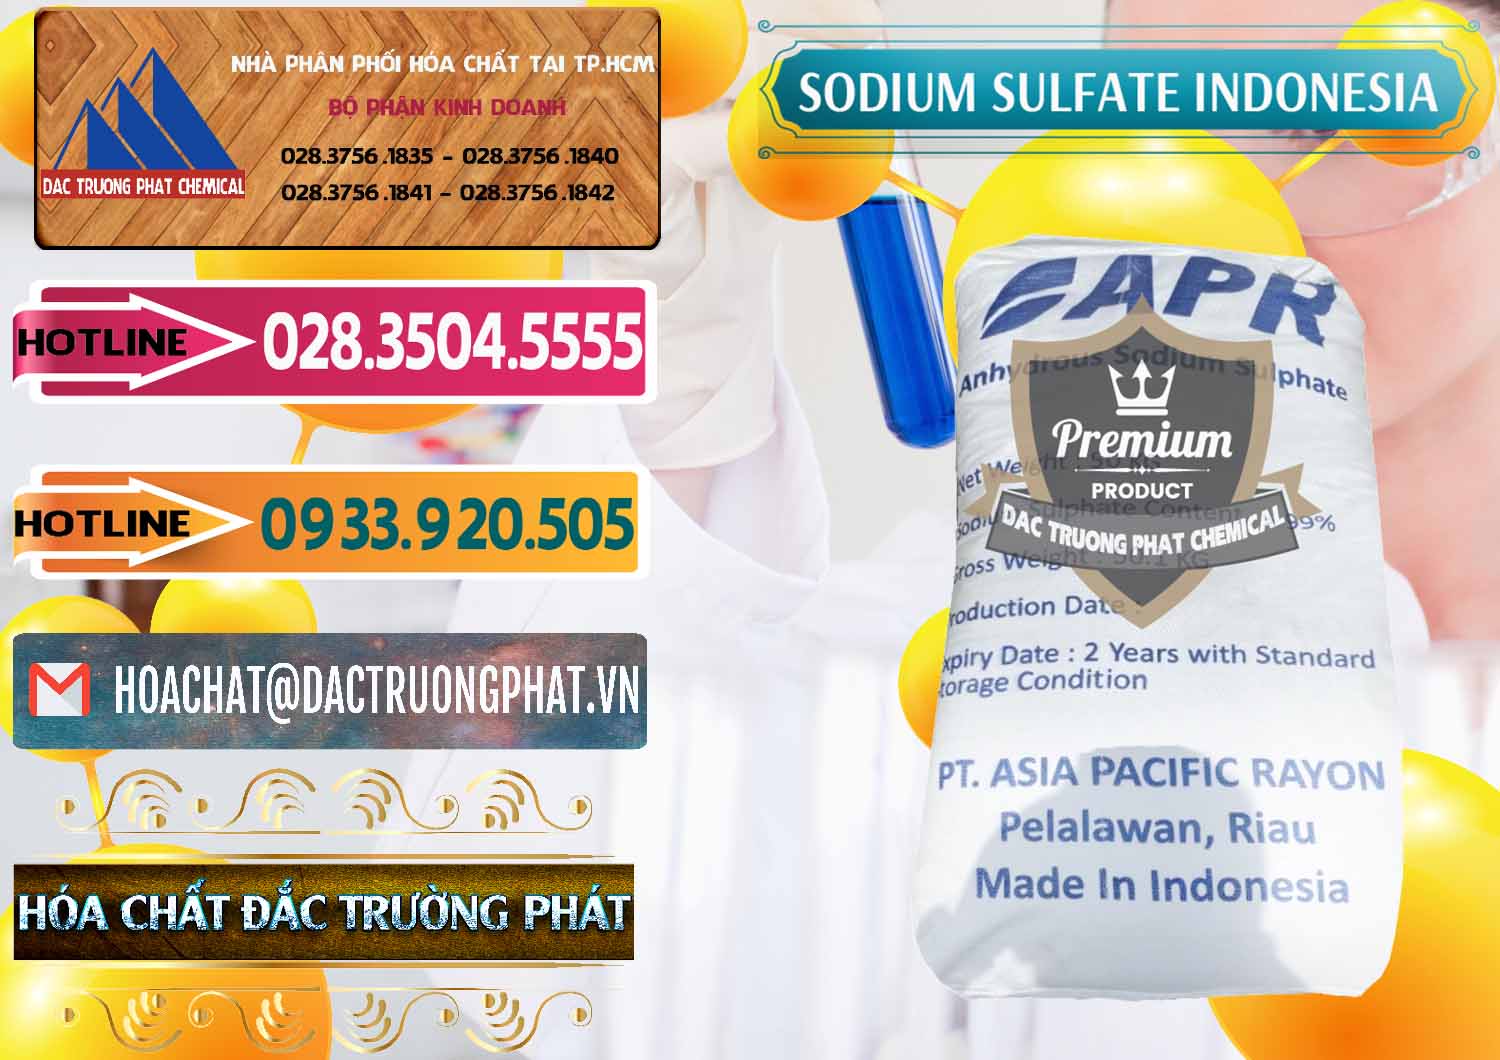 Cty chuyên kinh doanh và bán Sodium Sulphate - Muối Sunfat Na2SO4 APR Indonesia - 0460 - Cty chuyên bán ( phân phối ) hóa chất tại TP.HCM - dactruongphat.vn